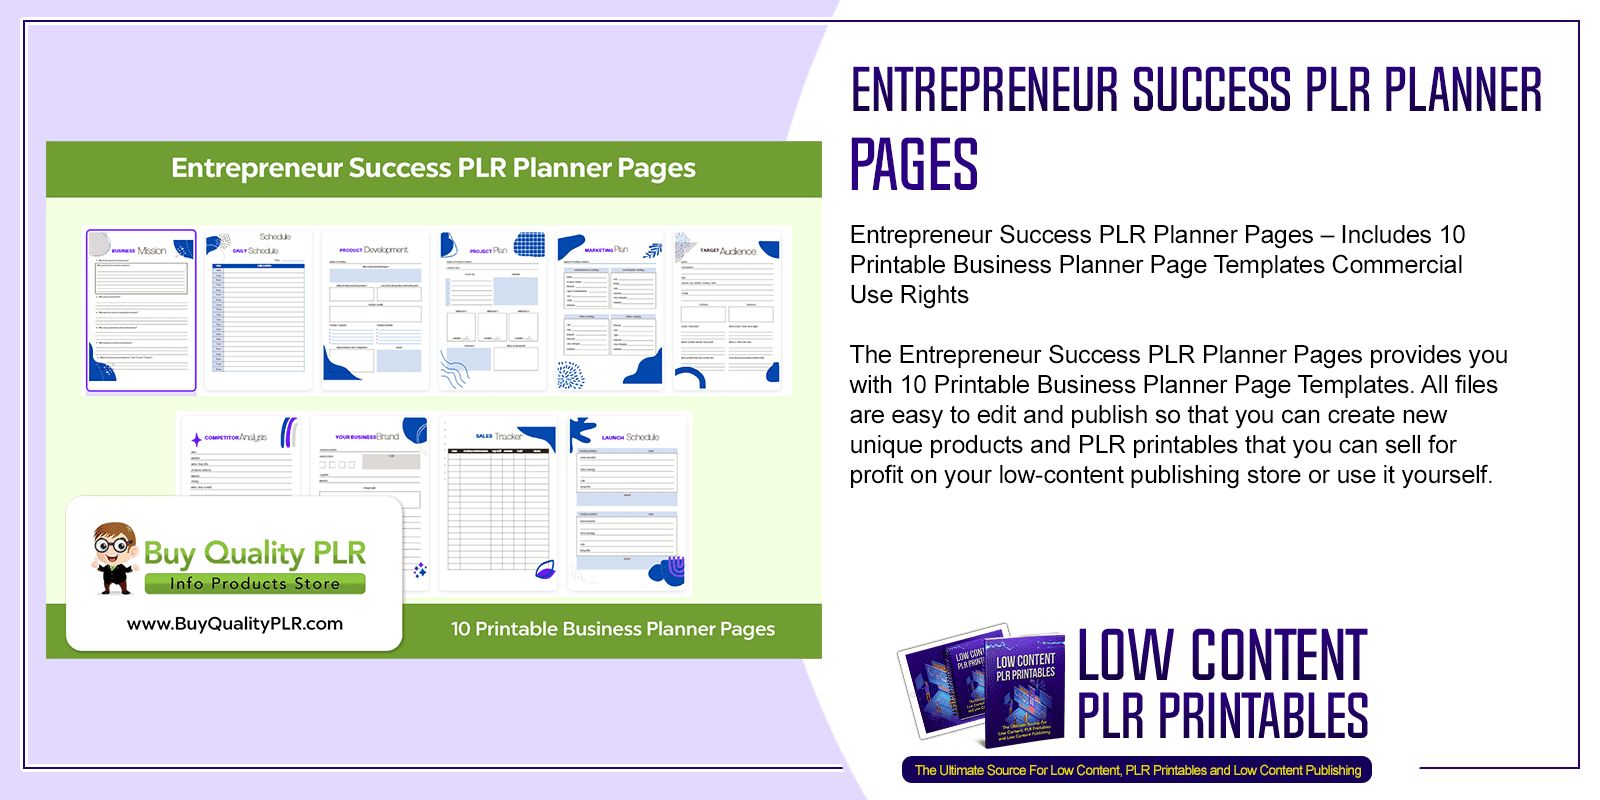 Entrepreneur Success PLR Planner Pages